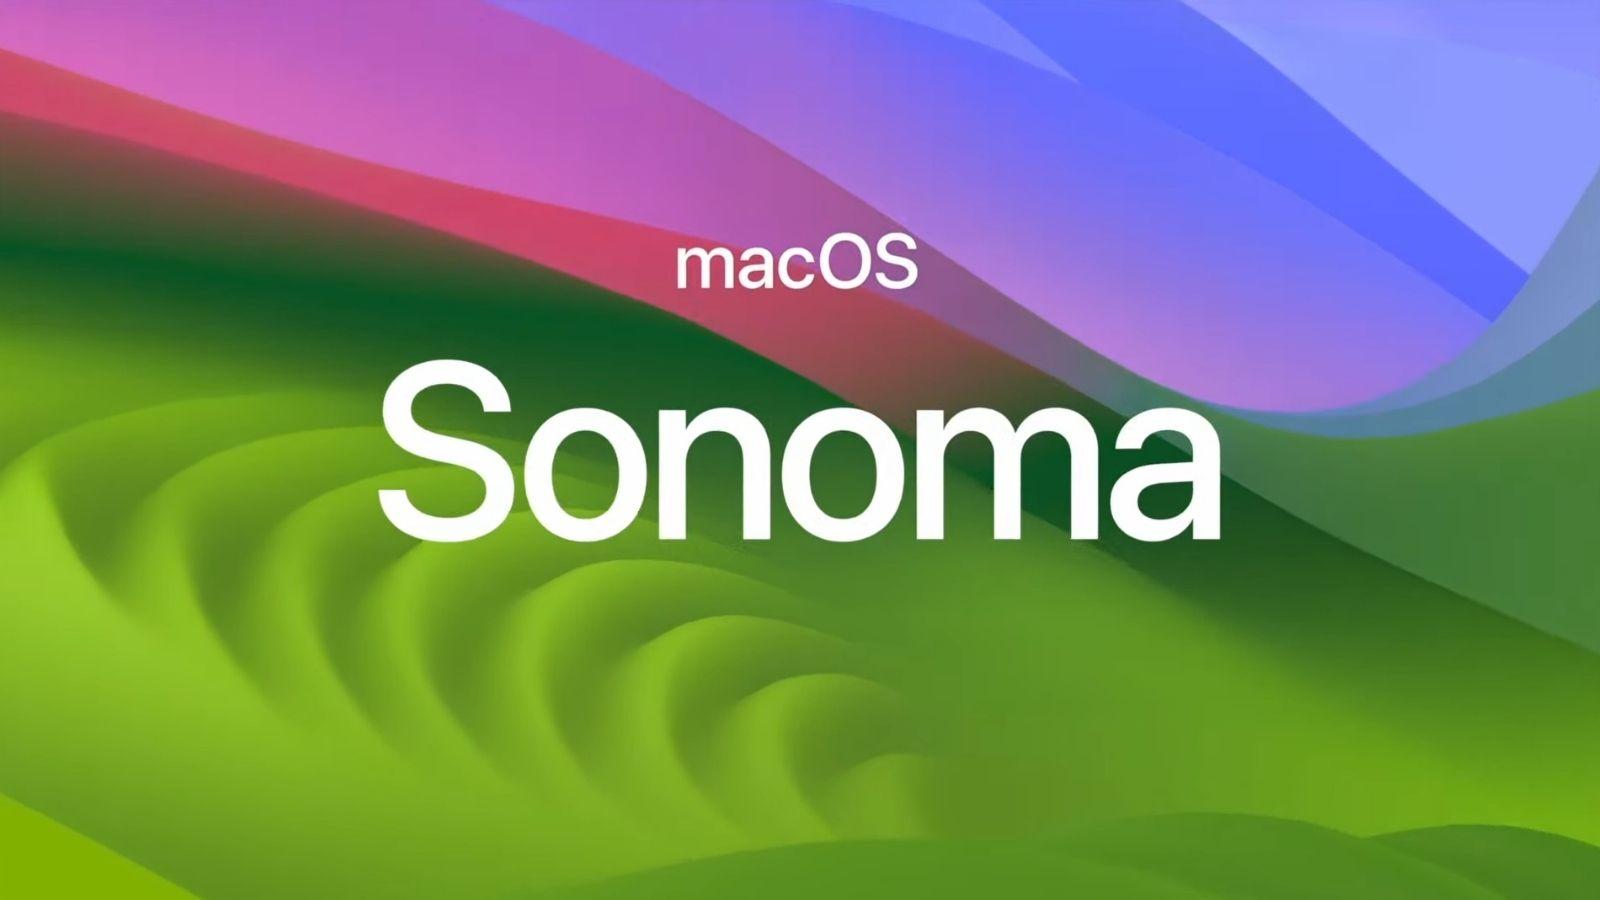 MacOS Sonoma güncellemesi 14.4, bir hata nedeniyle iCloud'da saklanan dosyaları silerek yedeklemeyi imkansız kılıyor. 